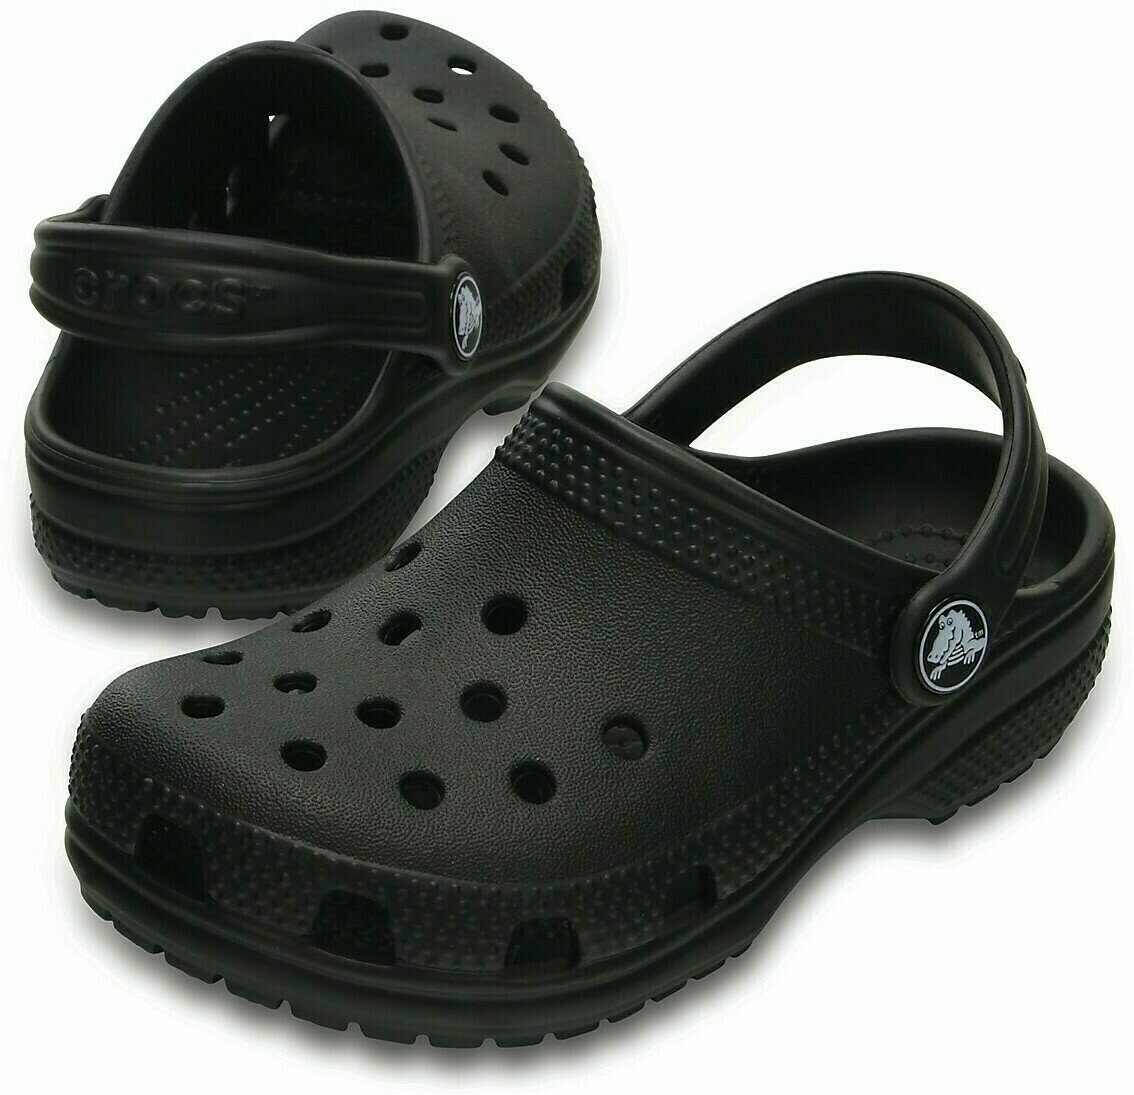 Jachtařská obuv Crocs Kids' Classic Clog Black 38-39